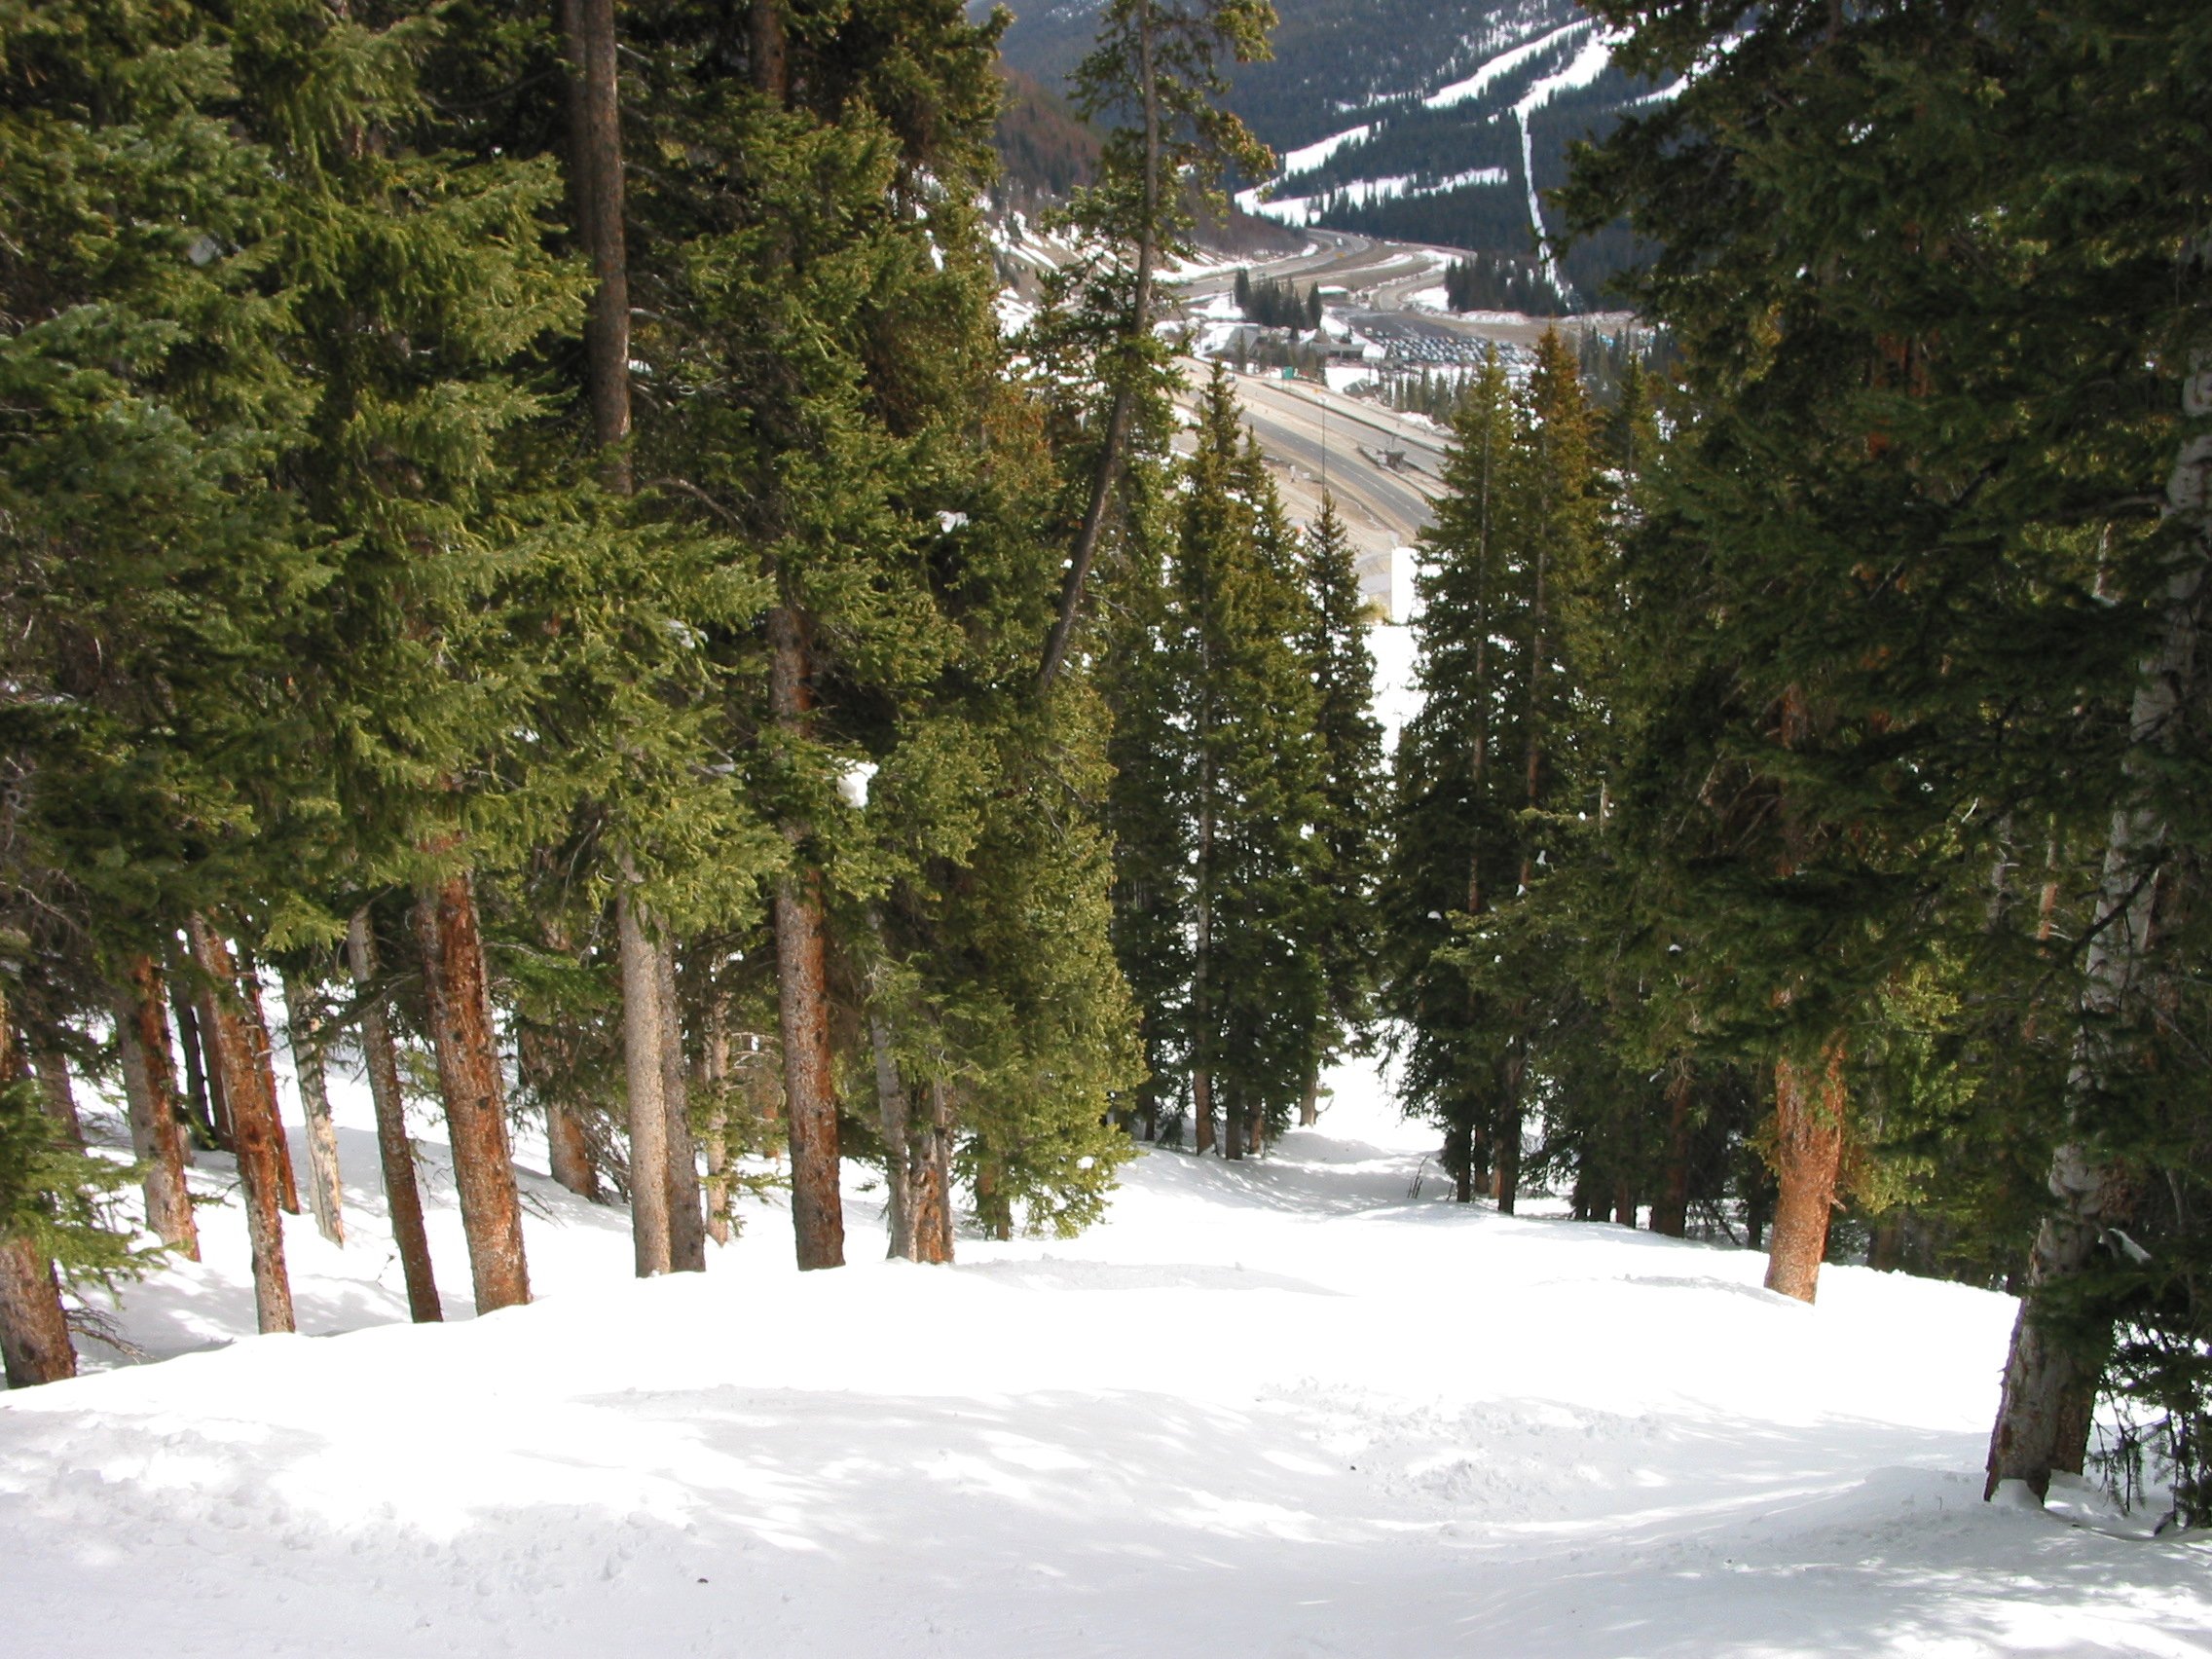 Tree skiing near Scrub